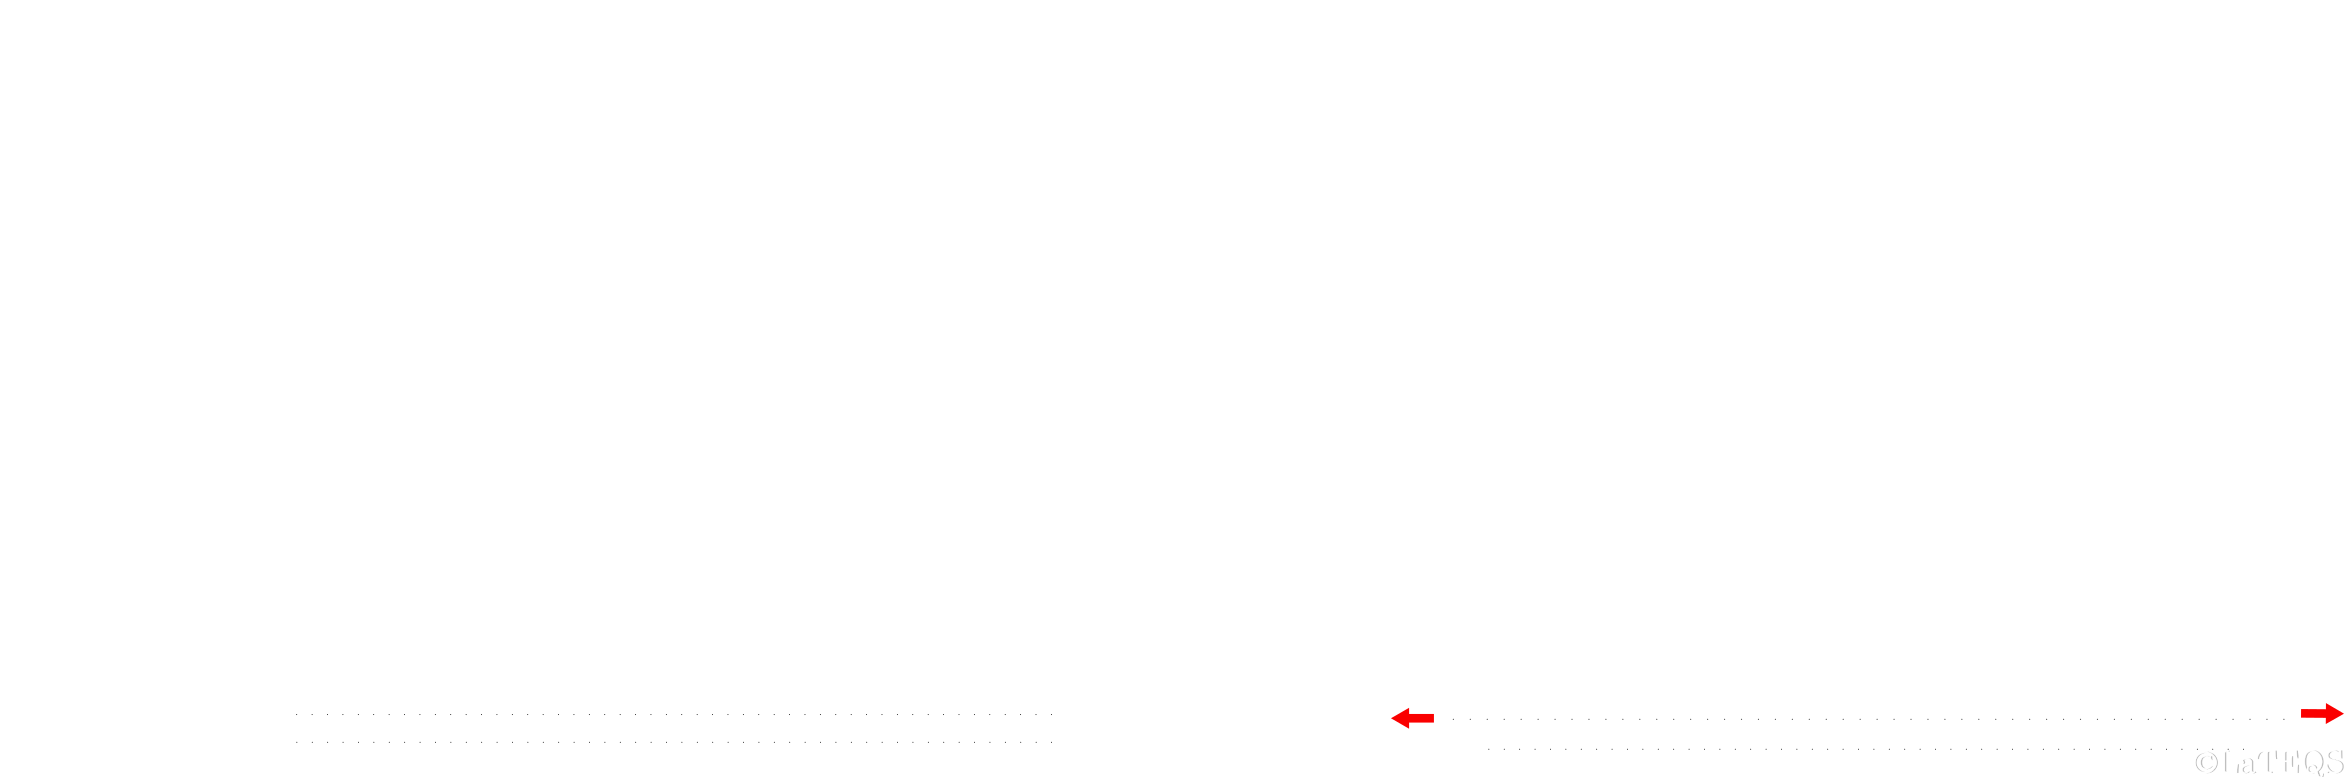 Sketch of possible deformations of a van der waals structure.